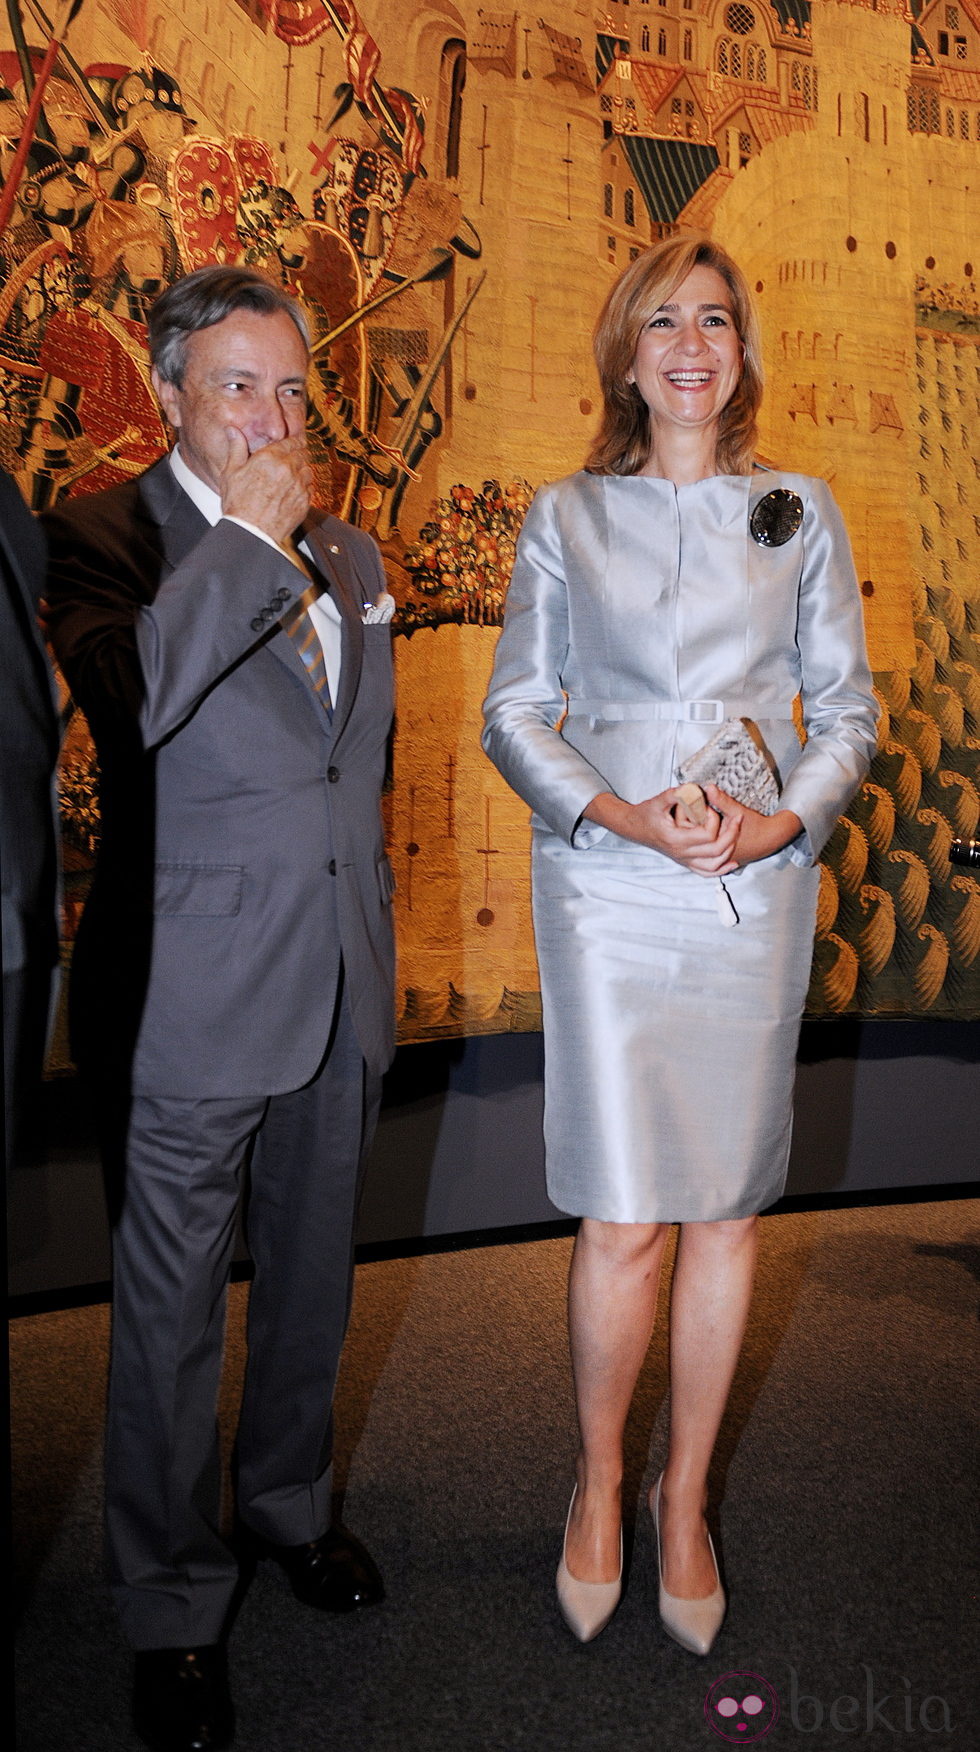 La Infanta Cristina y el embajador de España en EEUU en la exposición de tapices de Pastrana